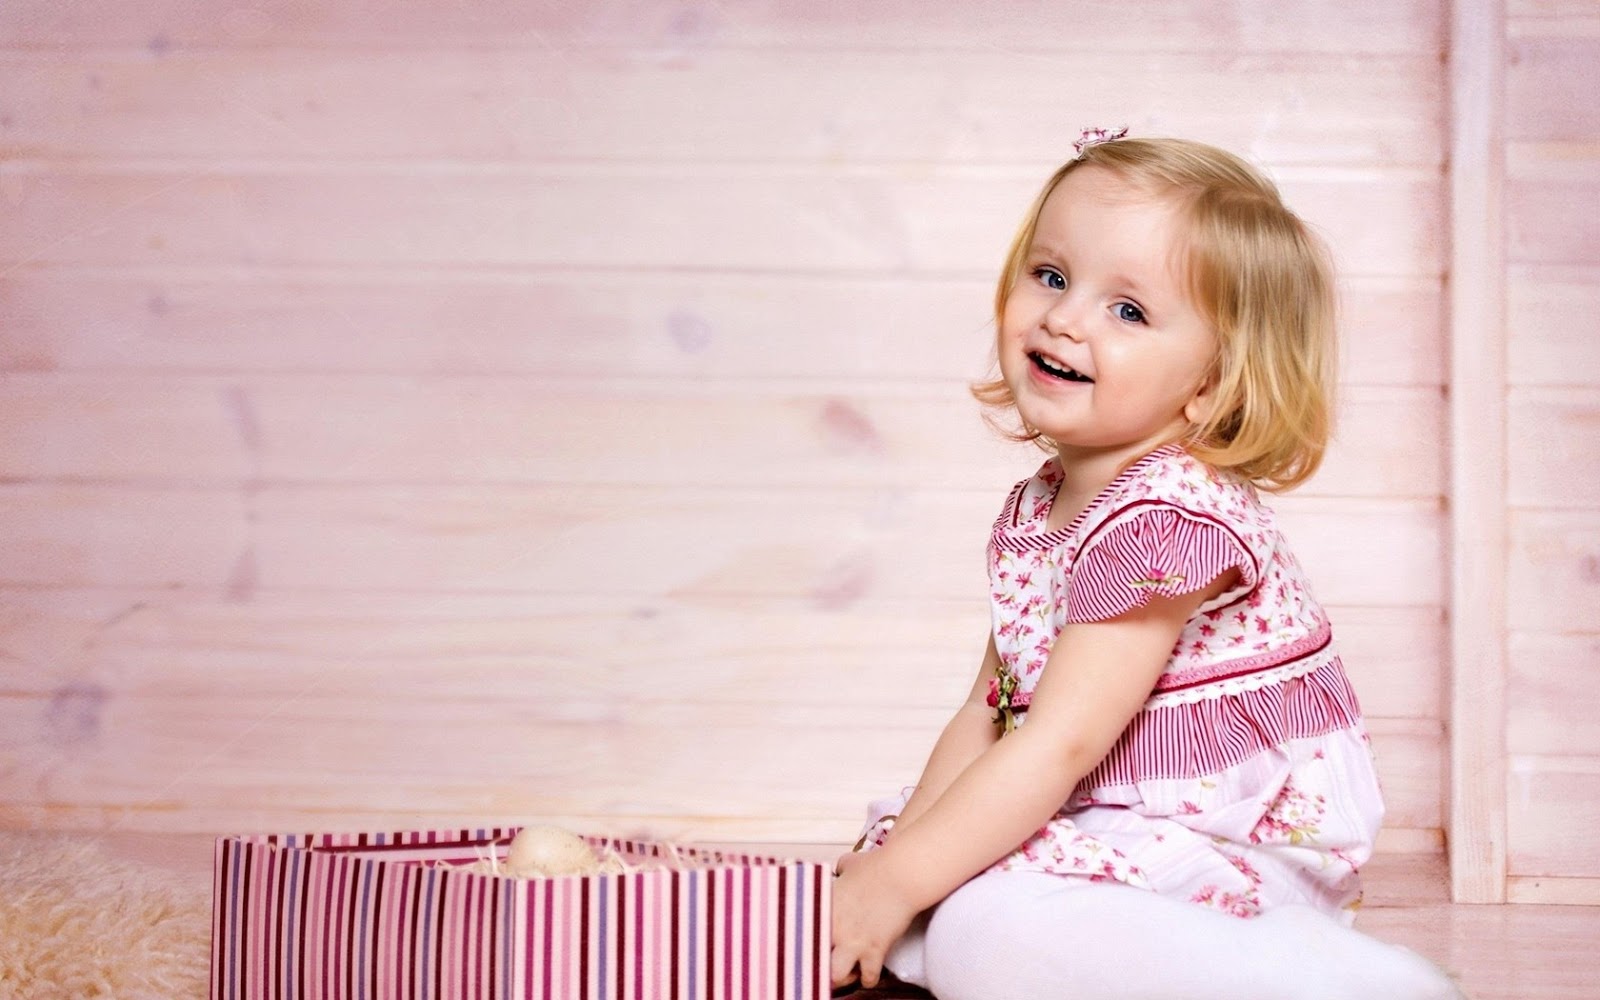 Cute+Little+Baby+Girl+And+Gift+Box+HD+Wallpaper-1680x1050-cutelittlebabies.blogspot.com.jpg